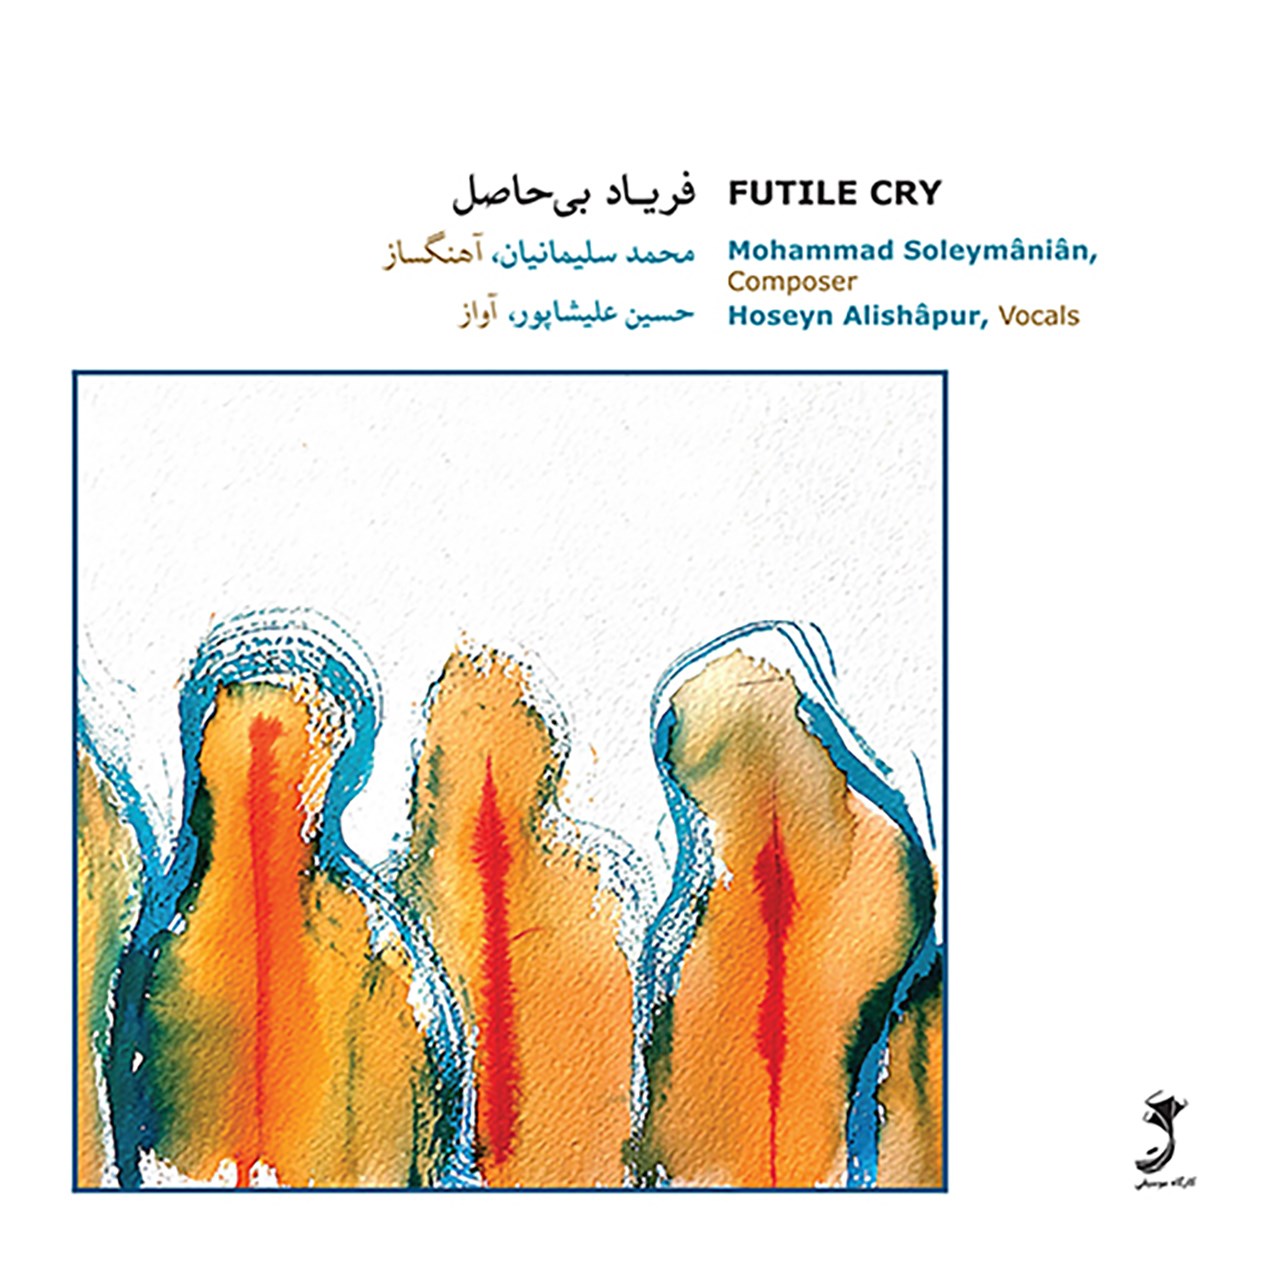 آلبوم موسیقی فریاد بی حاصل اثر حسین علیشاپور